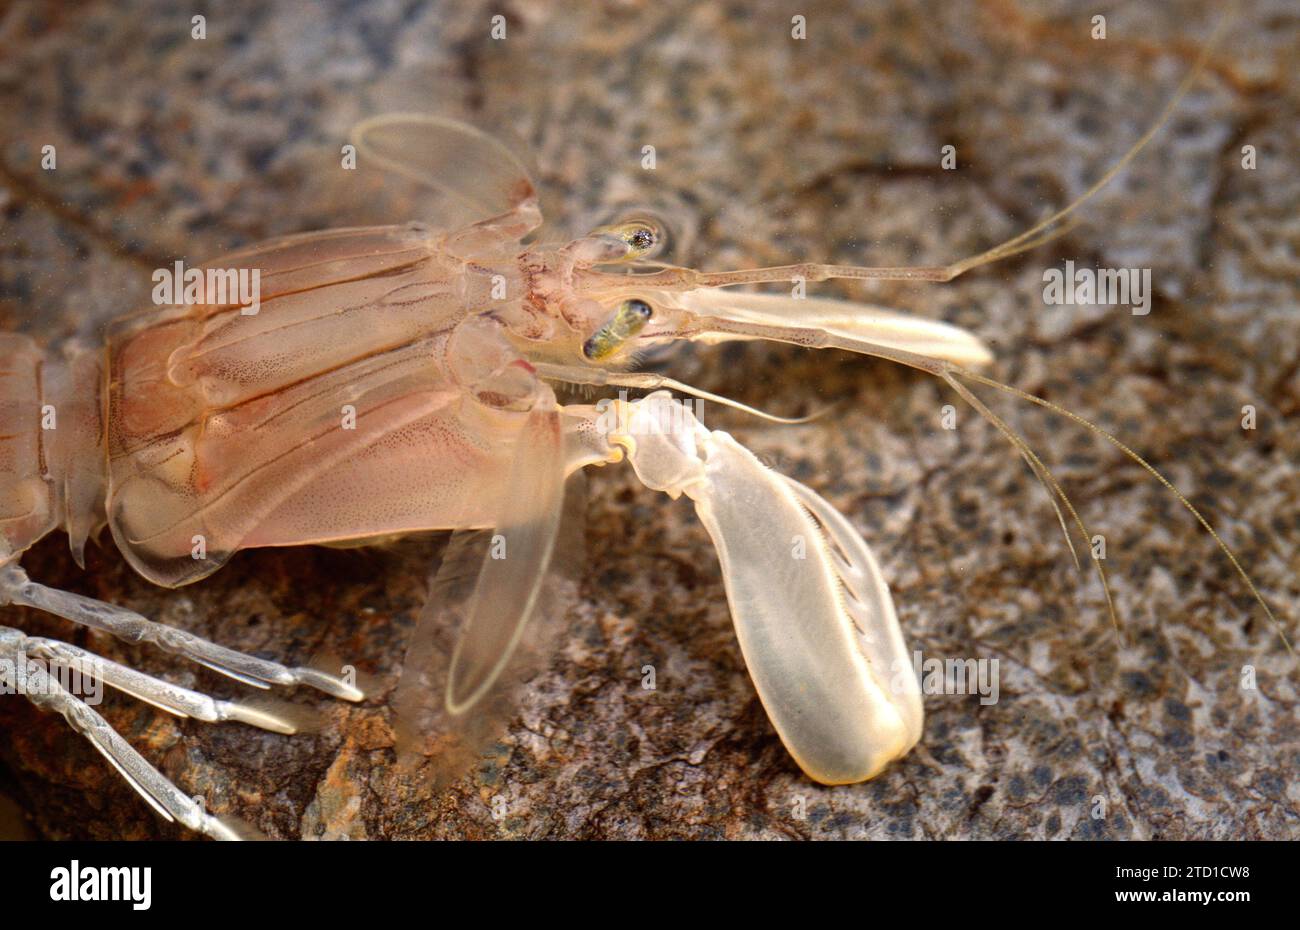 La crevette Mantis (Squilla mantis) est un crustacé comestible originaire de la mer Méditerranée et de l'océan Atlantique est. Détail céphalothorax. Banque D'Images